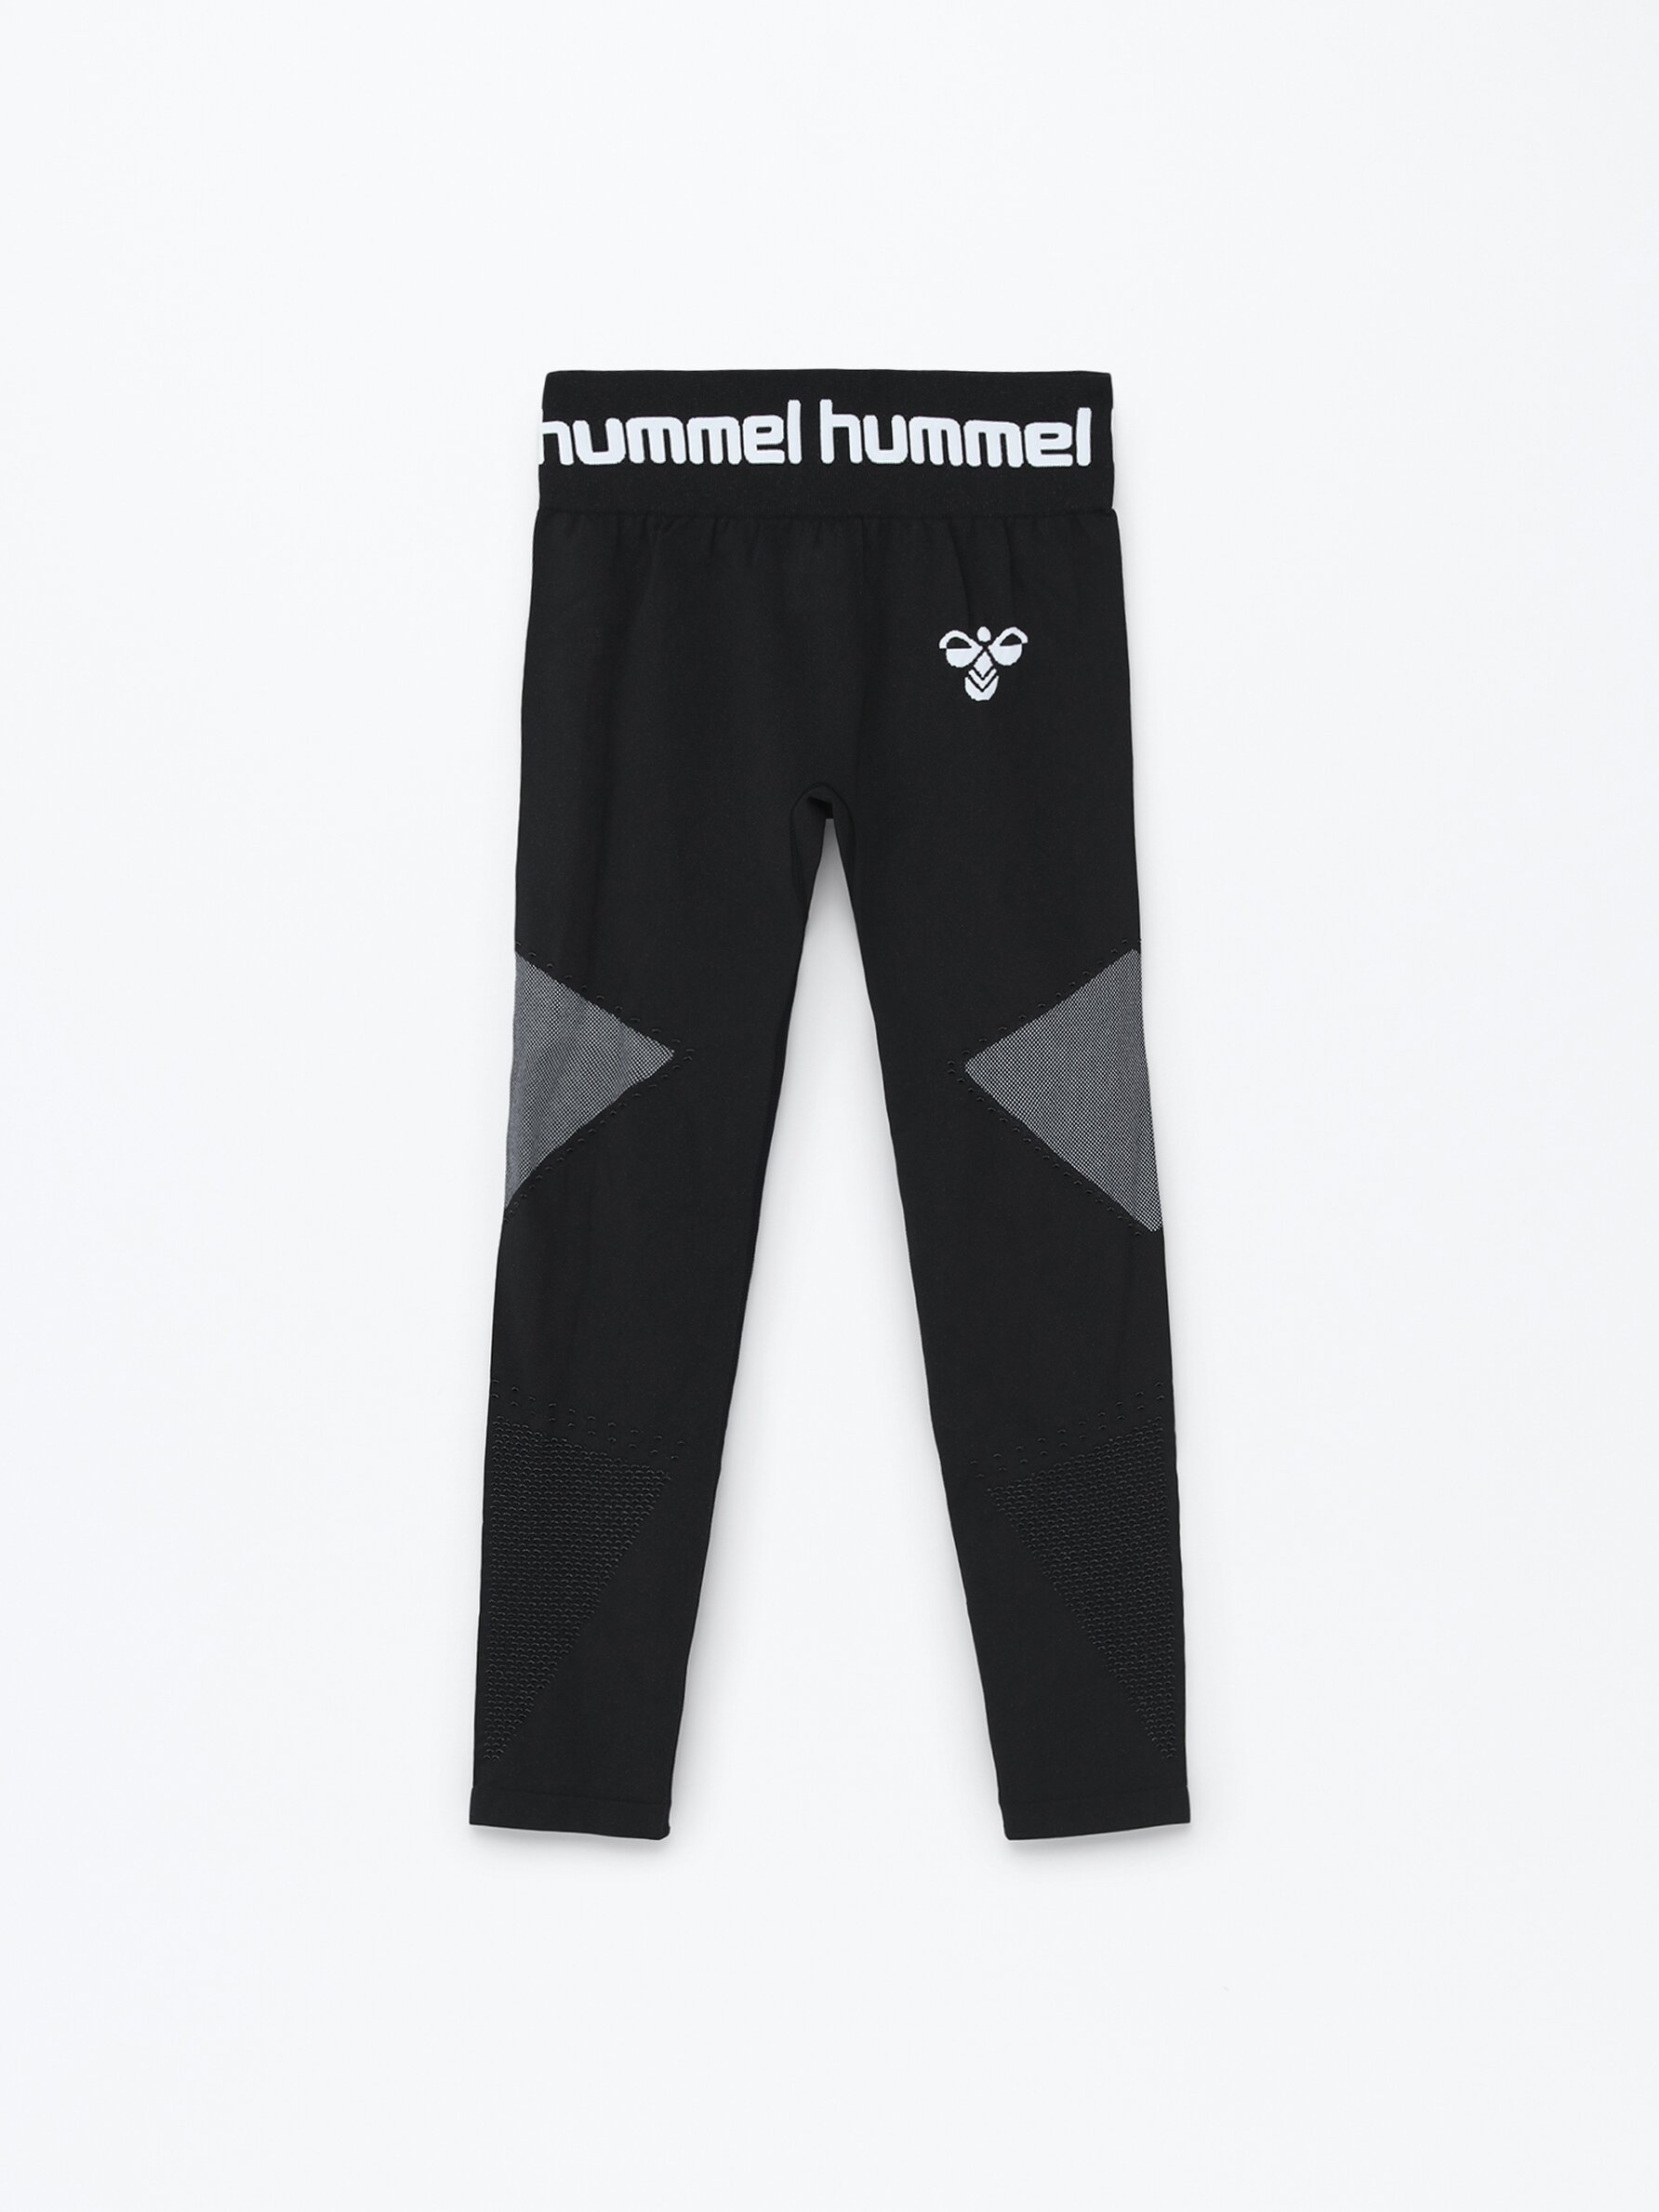 Seamless Hummel Sports Woman x Lefties - - | Turkey Lefties CLOTHING - Bras Sportswear leggings - 